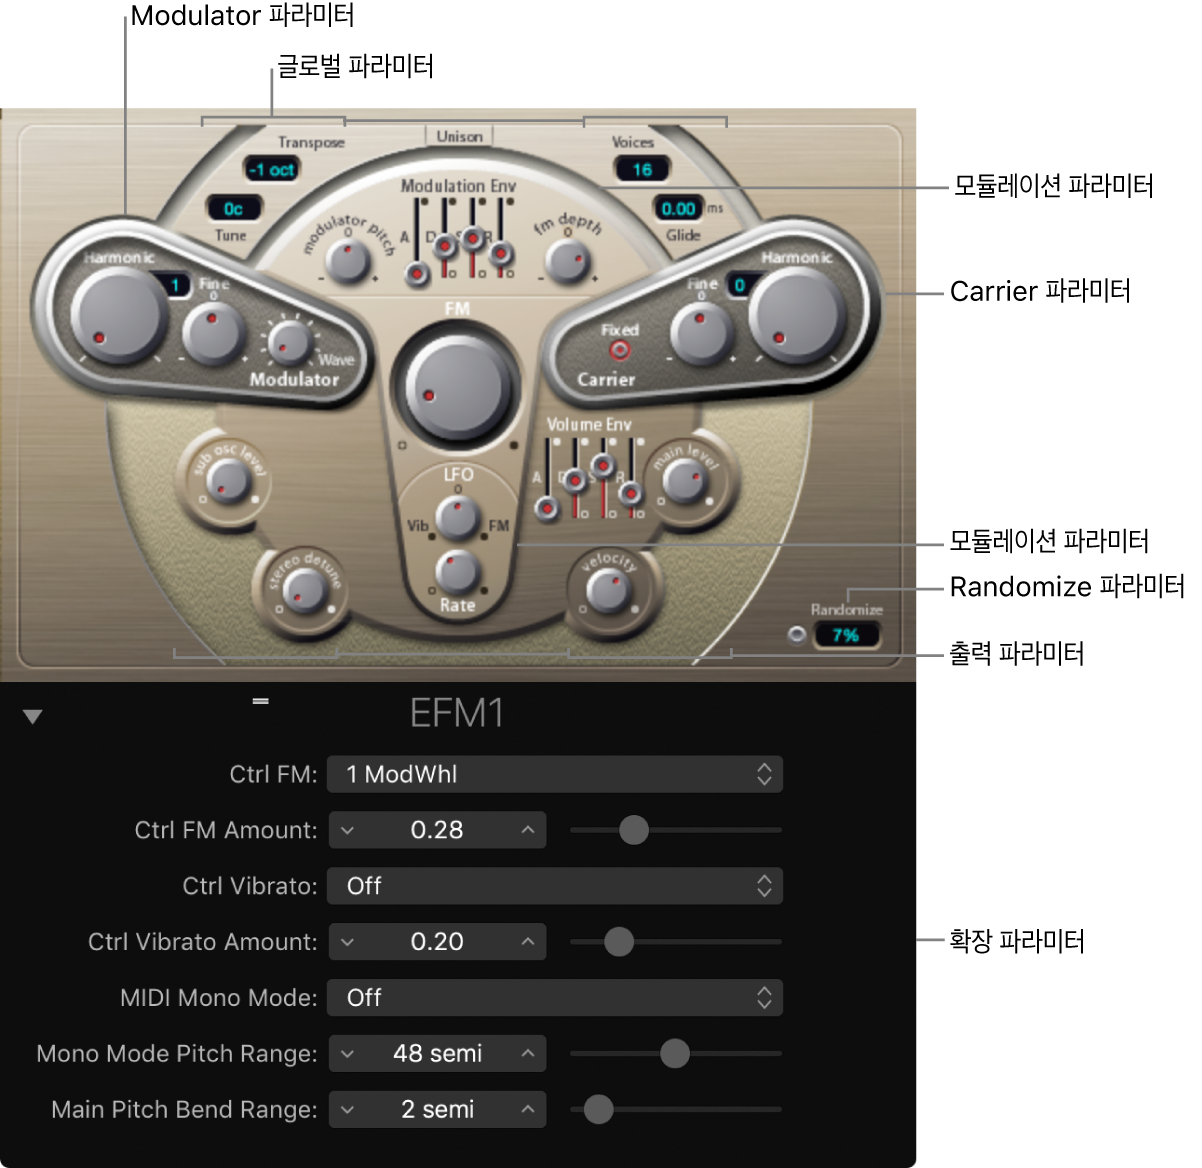 그림. 메인 인터페이스 영역을 보여주는 EFM1 윈도우